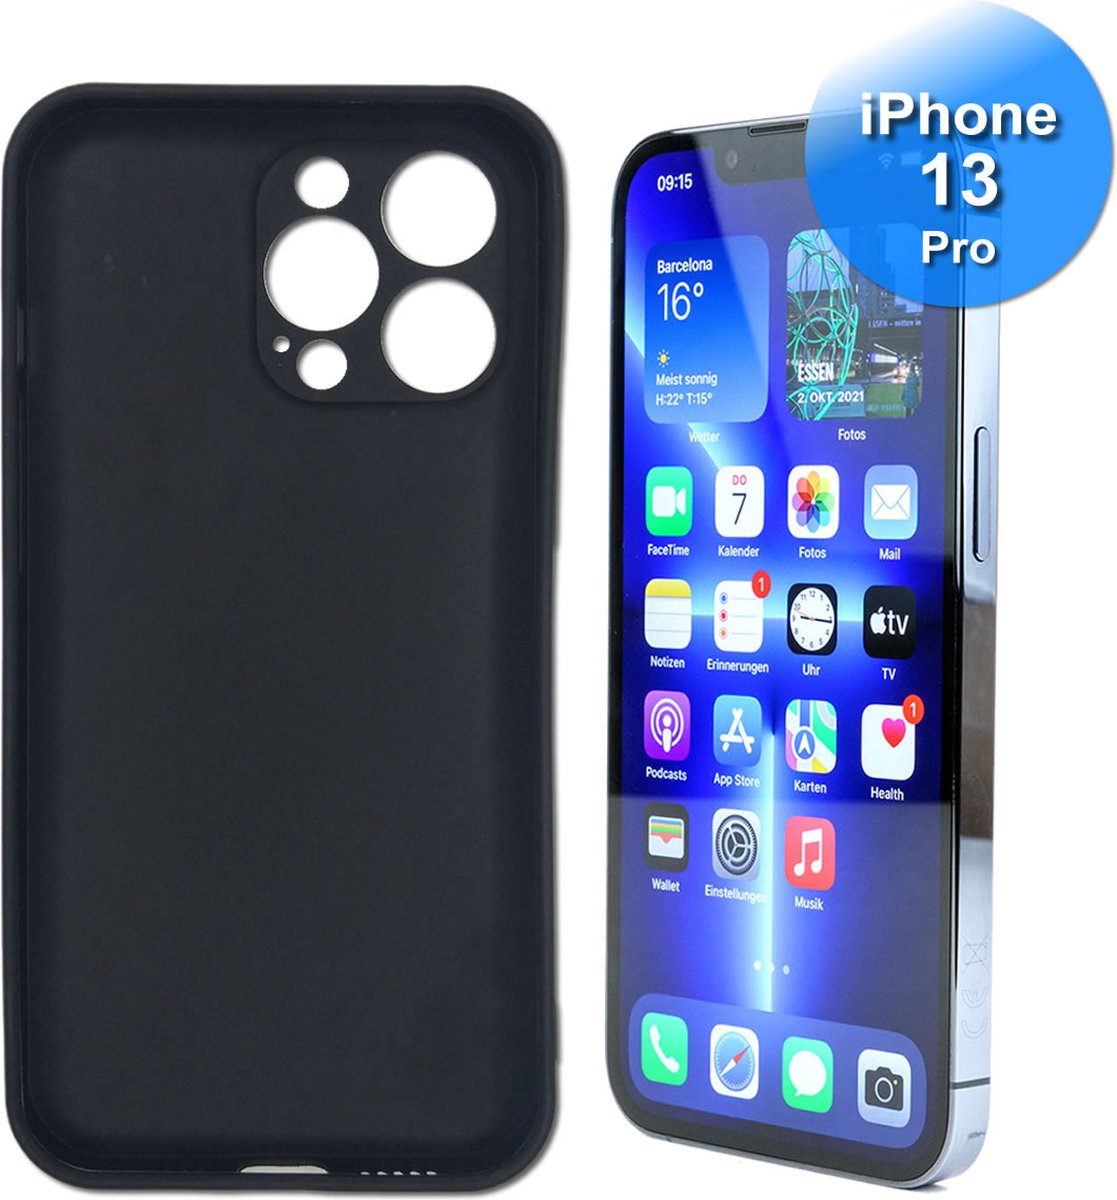 Hoesje voor iPhone 13 Pro - Siliconen/TPU Back Cover - Zwart - iPhone 13 Pro Telefoonhoesje Zwart Siliconen